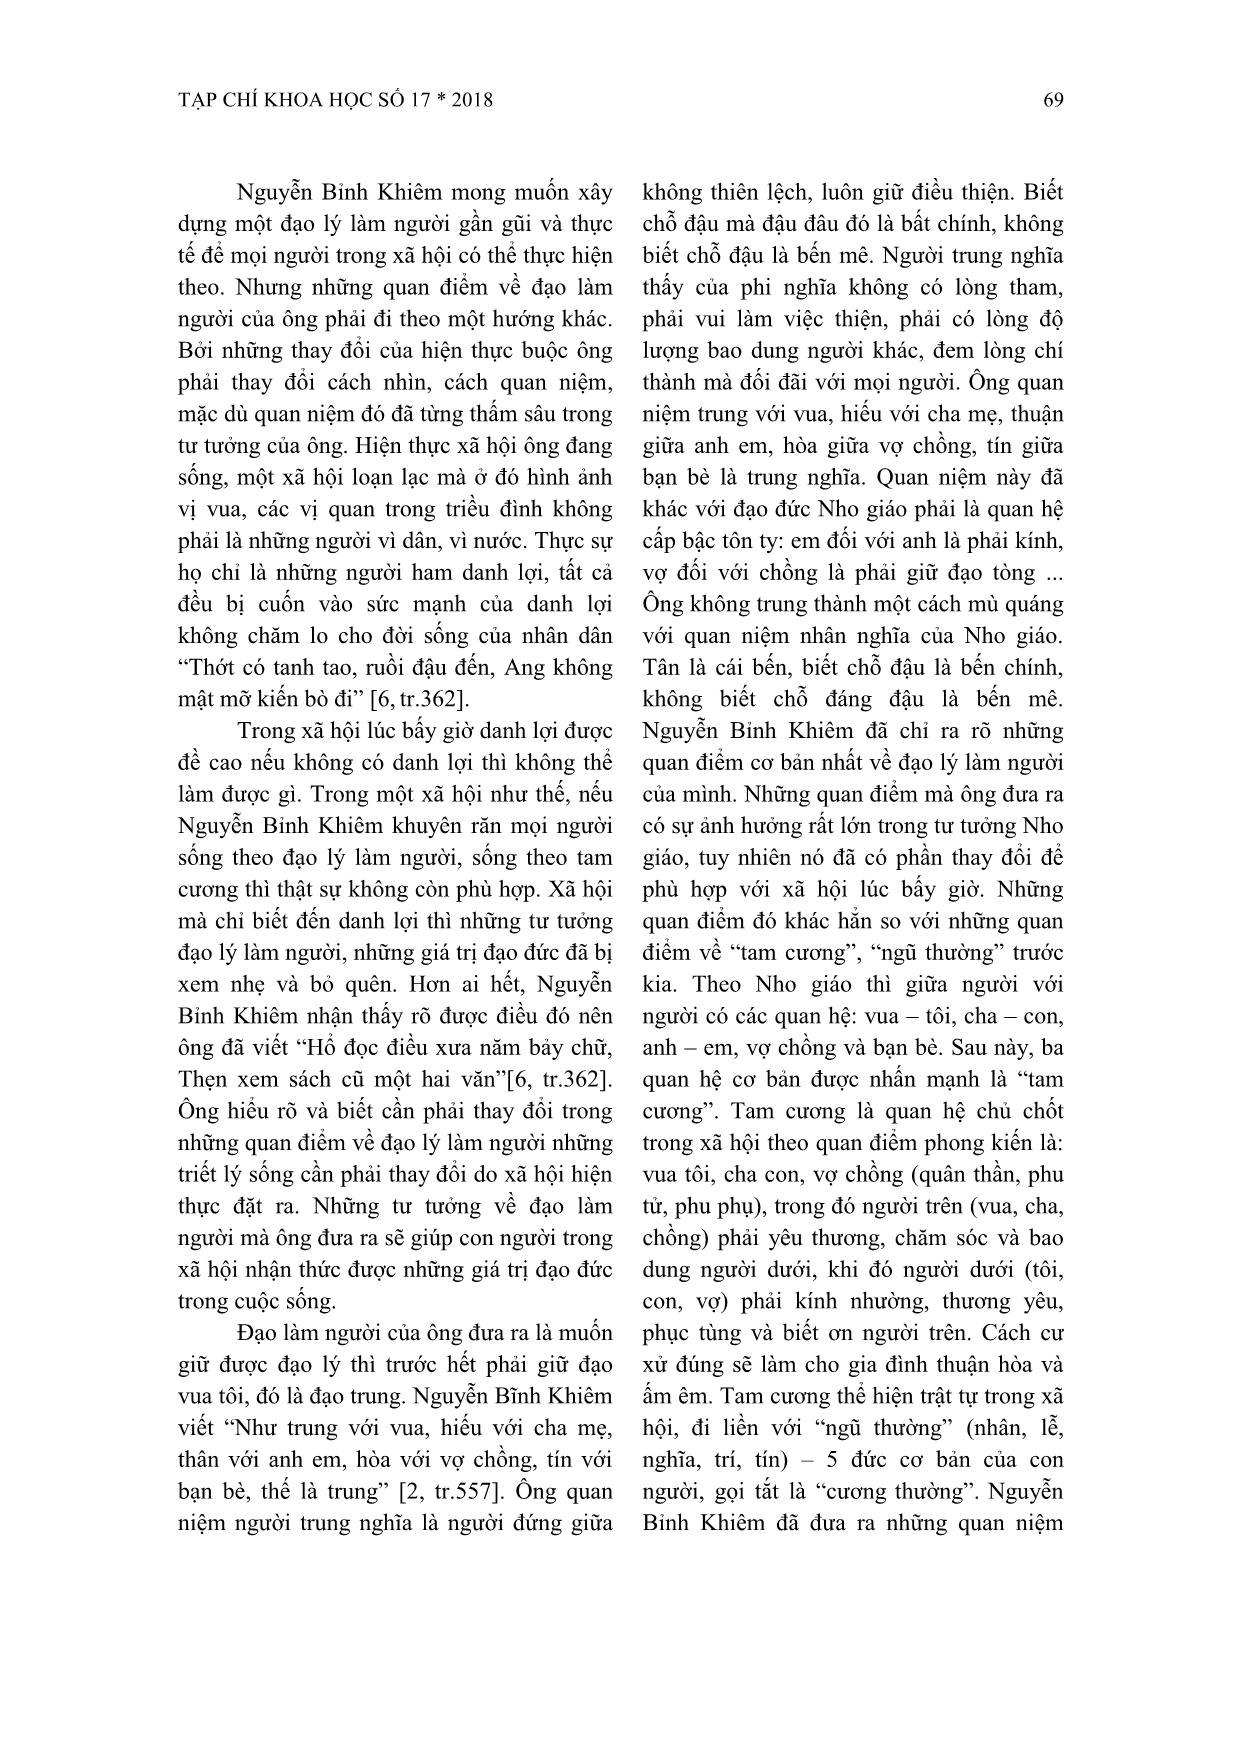 Nội dung và ý nghĩa quan điểm về đạo làm người của Nguyễn Bỉnh Khiêm trang 4